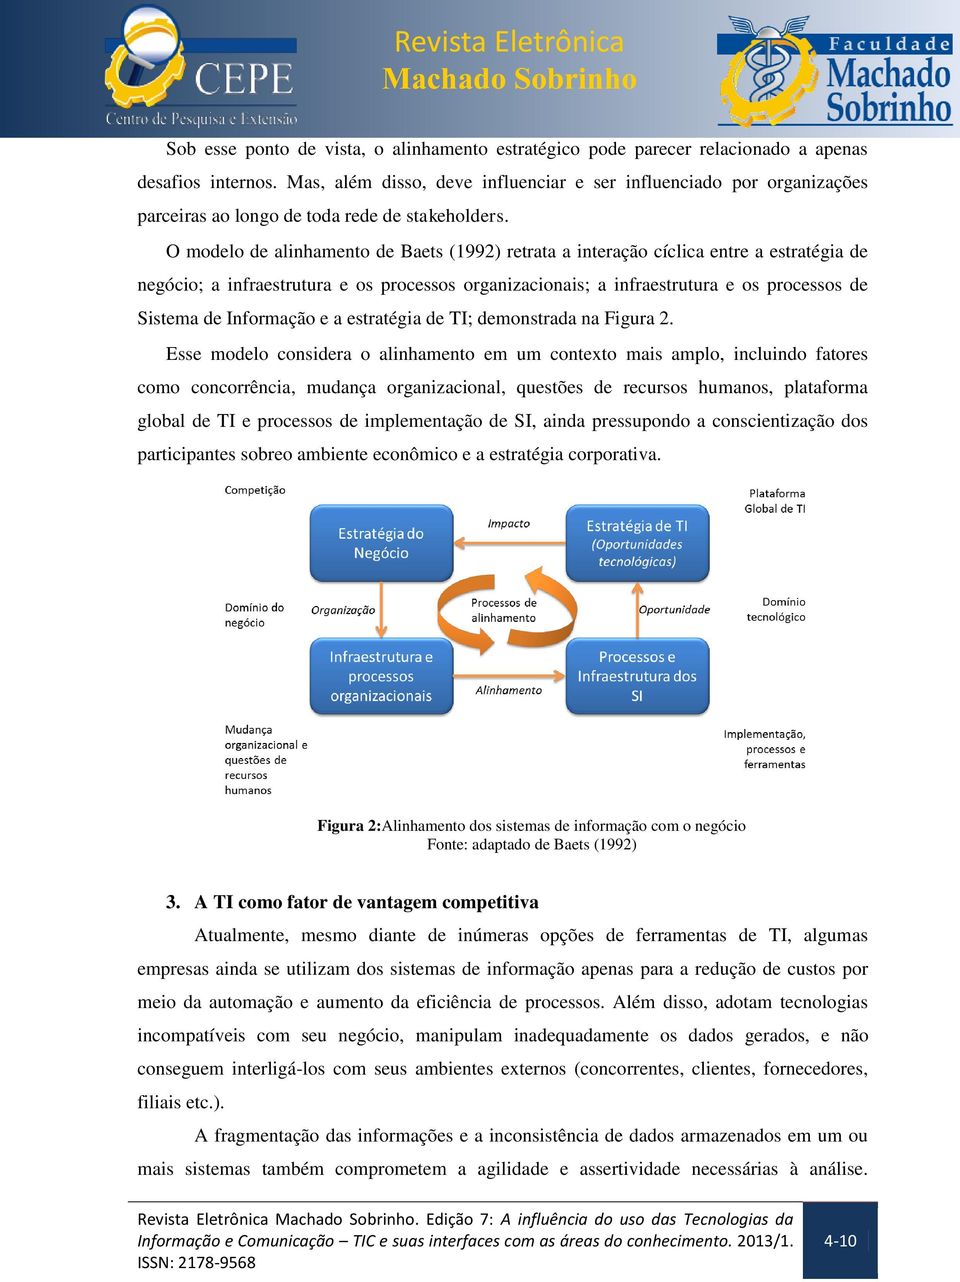 O modelo de alinhamento de Baets (1992) retrata a interação cíclica entre a estratégia de negócio; a infraestrutura e os processos organizacionais; a infraestrutura e os processos de Sistema de